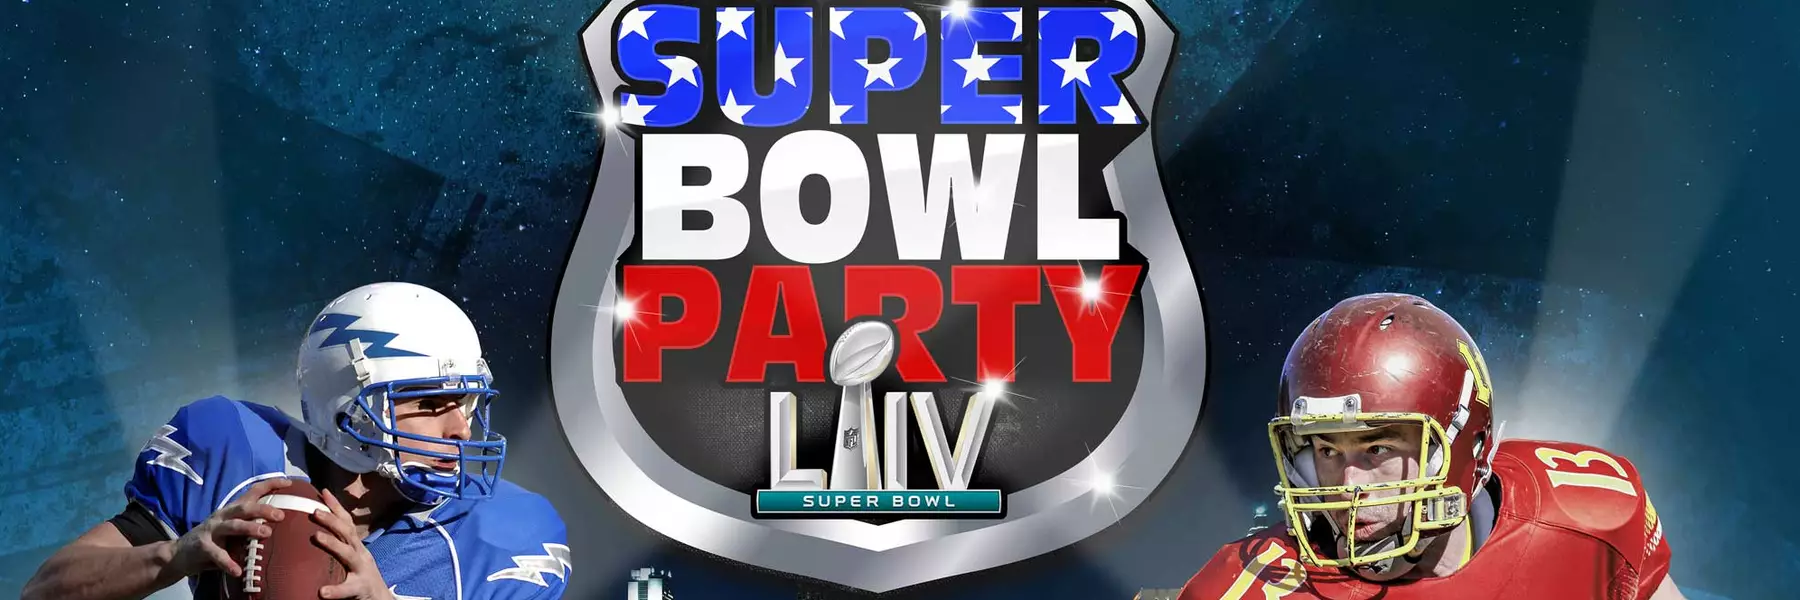 Super Bowl Party in der Samsung Hall 02.02.2020